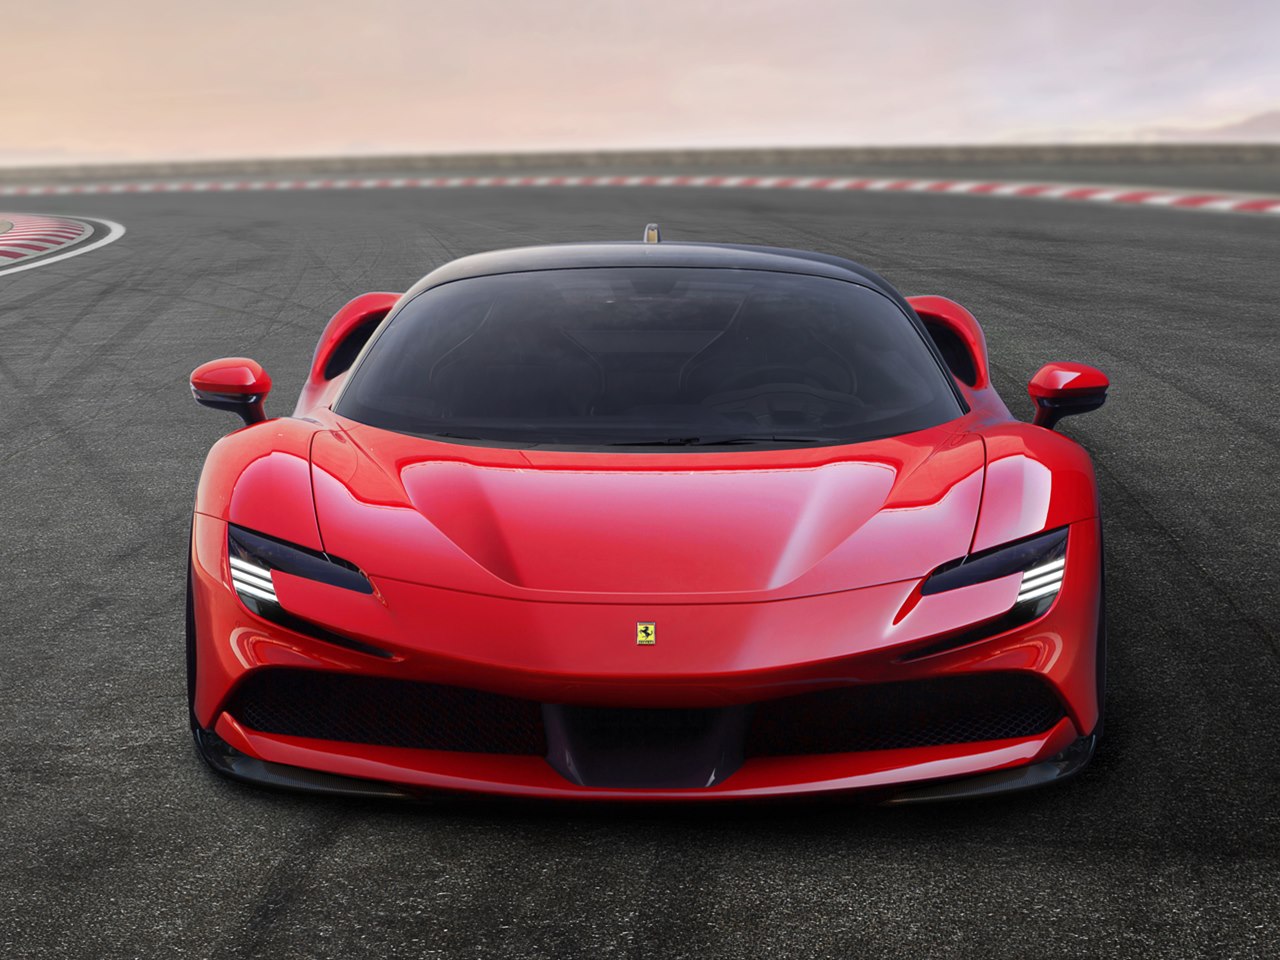 Un Ferrari SF90 Stradale rojo tomando una curva. El segundo en nuestro top 5 mejores deportivos 2020